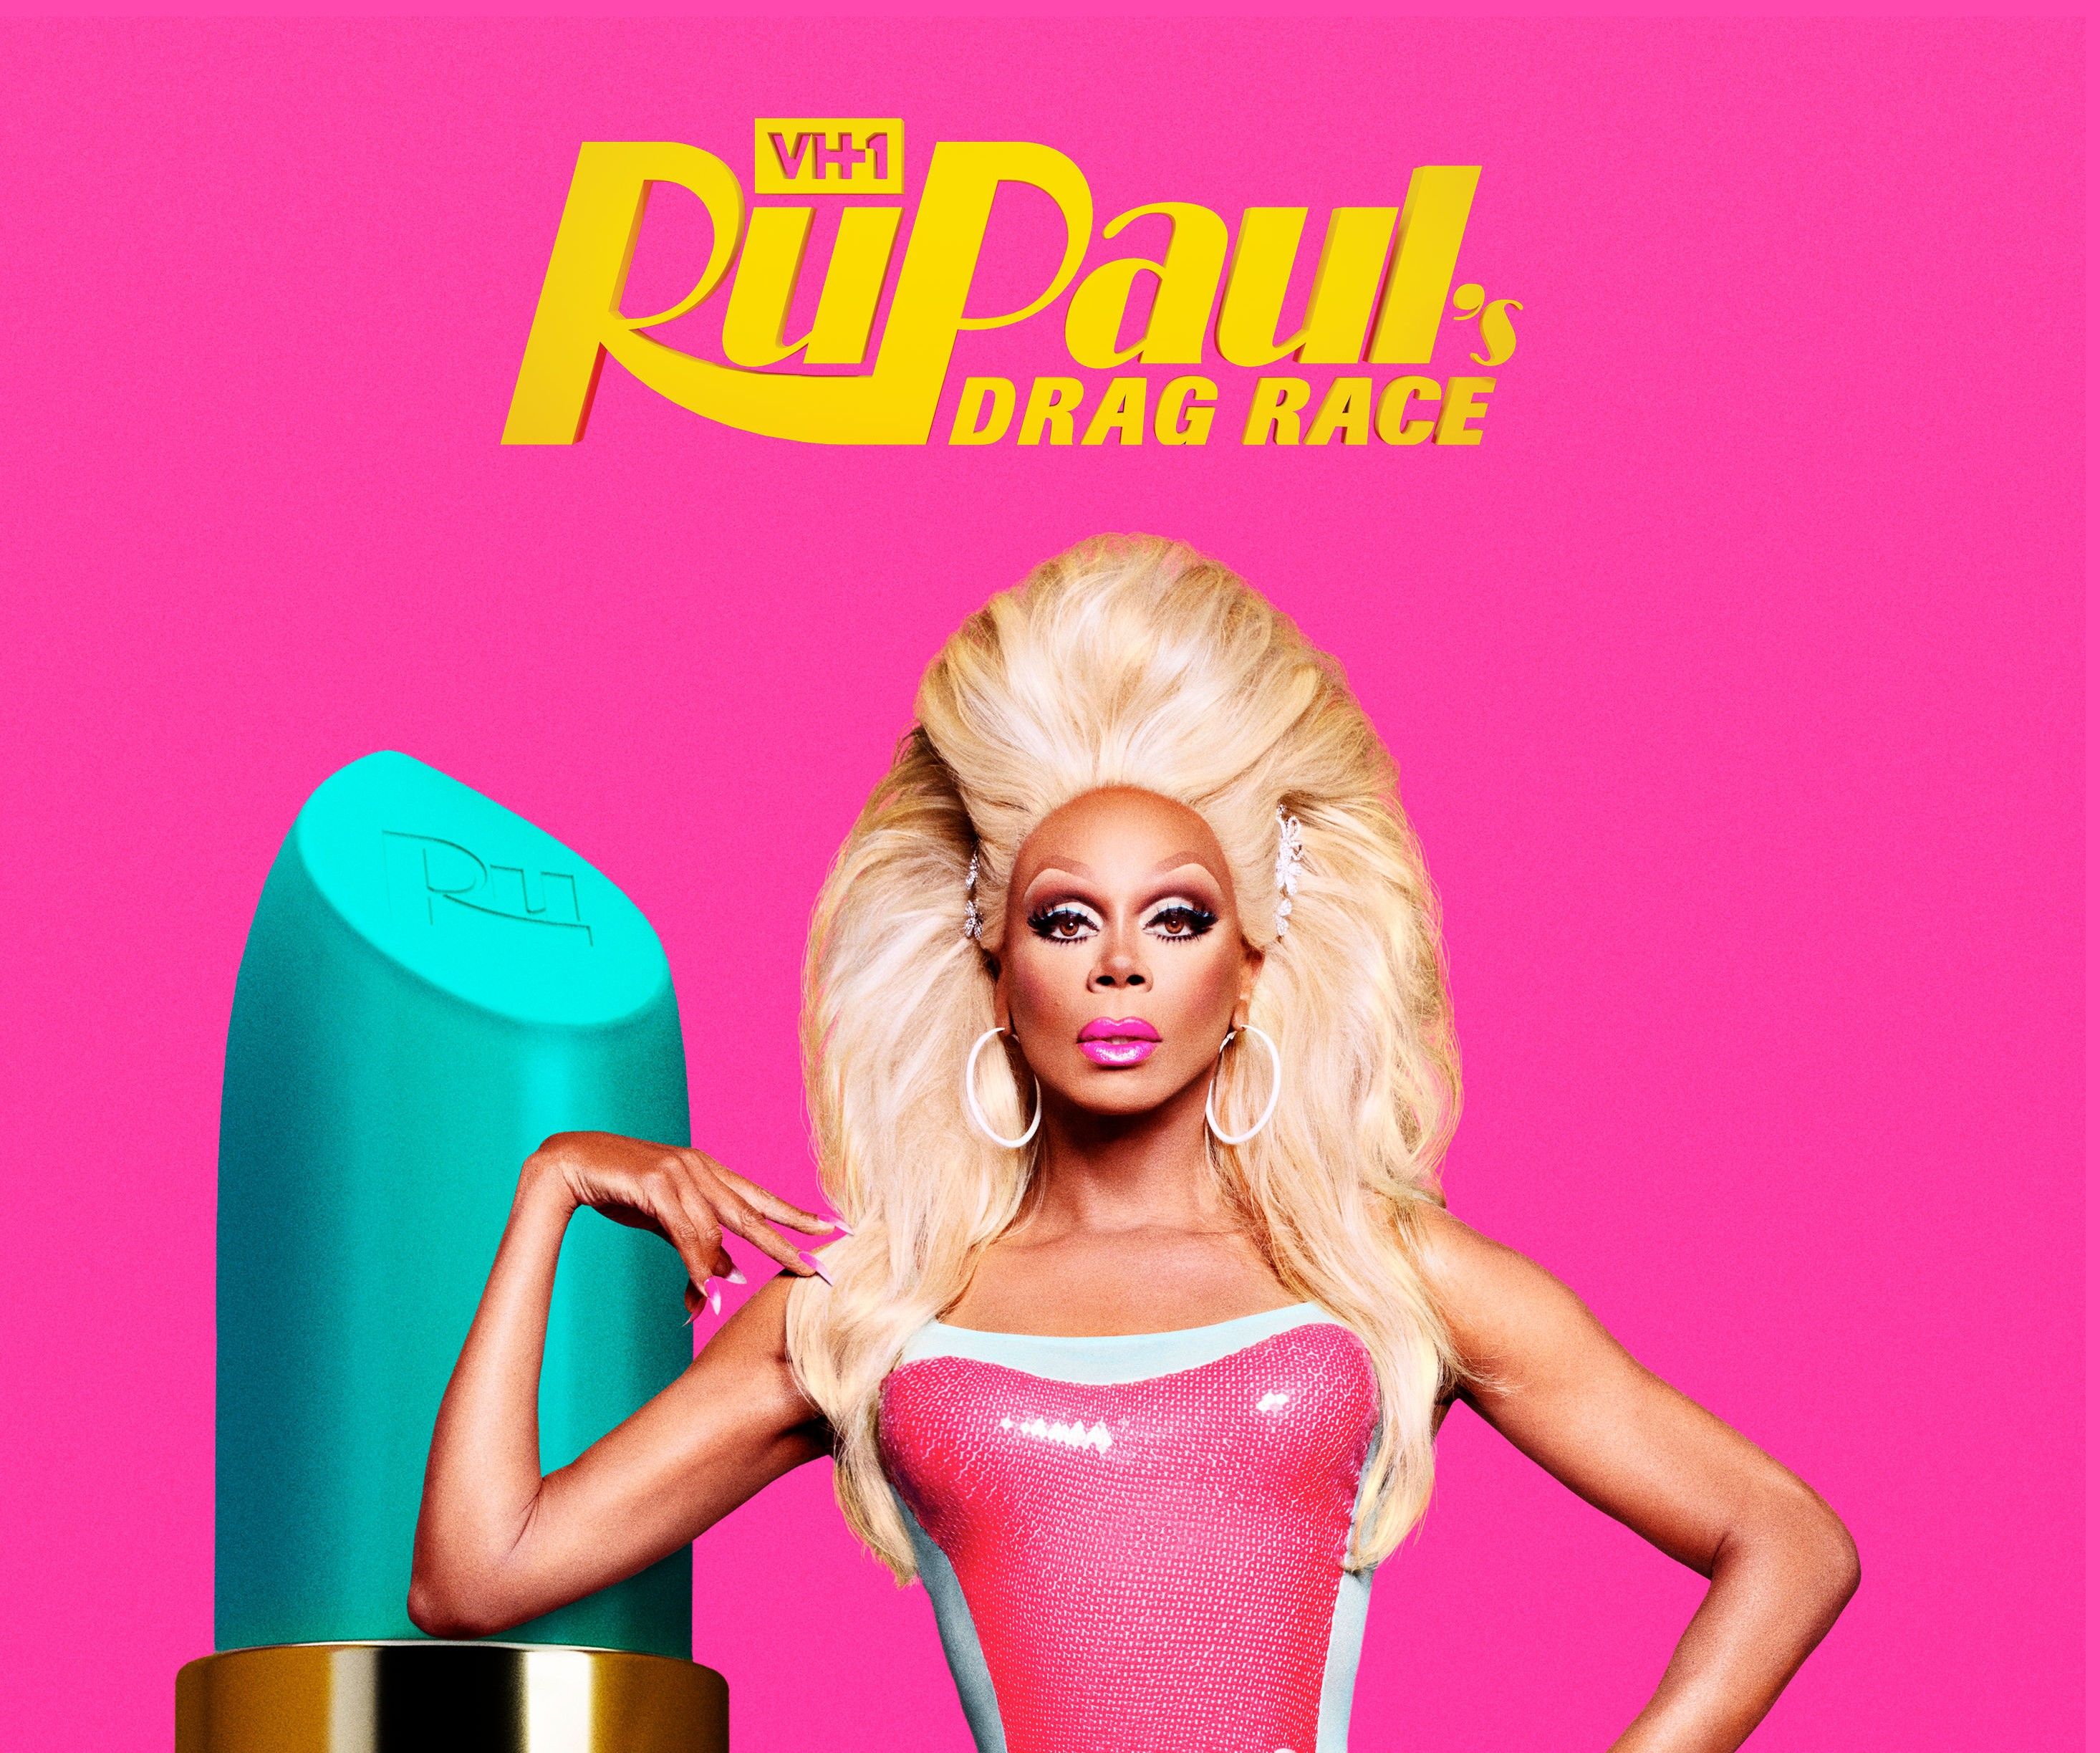 Ved hjælp af effektiv retorik underviser det Emmy-vindende realitygameshow “RuPaul’s Drag Race” os i godgørende værdier som ligeværd og selvrespekt. Billede: VH1 Press